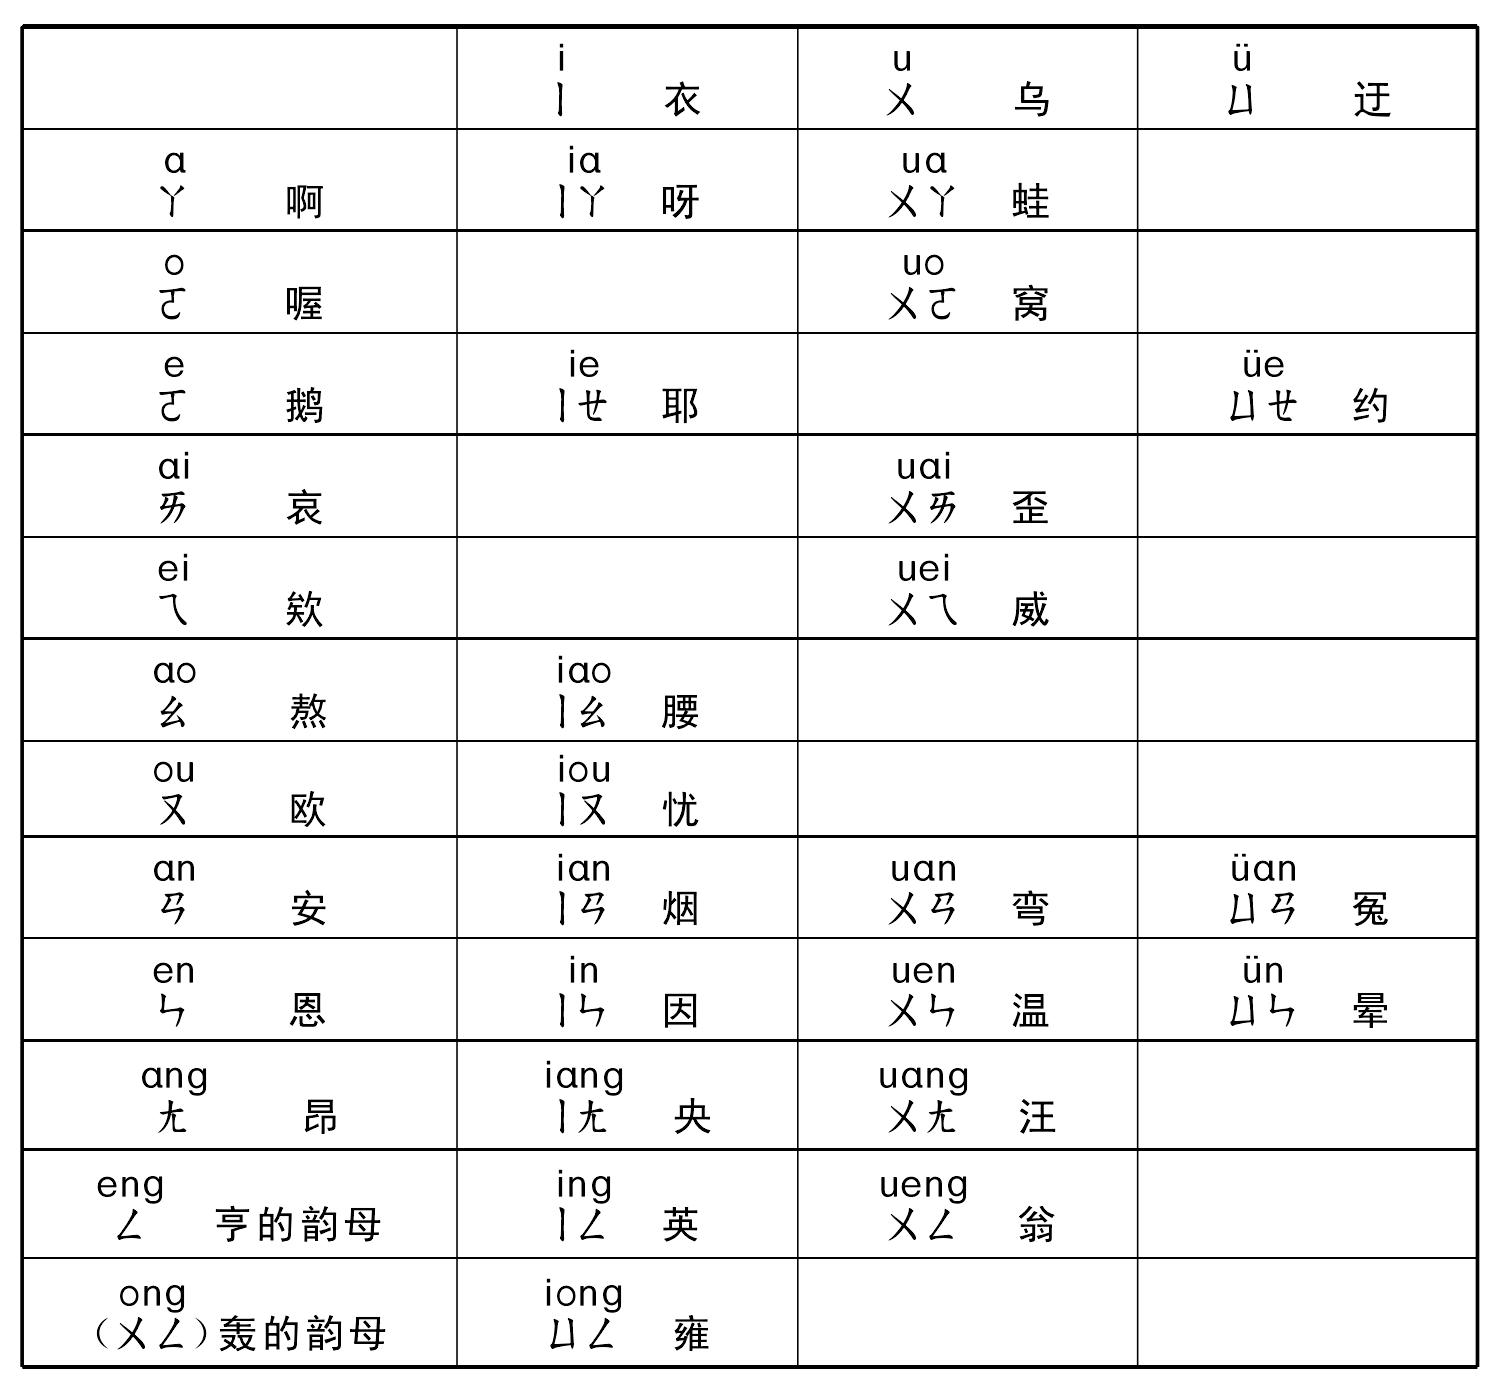 1.汉语拼音方案